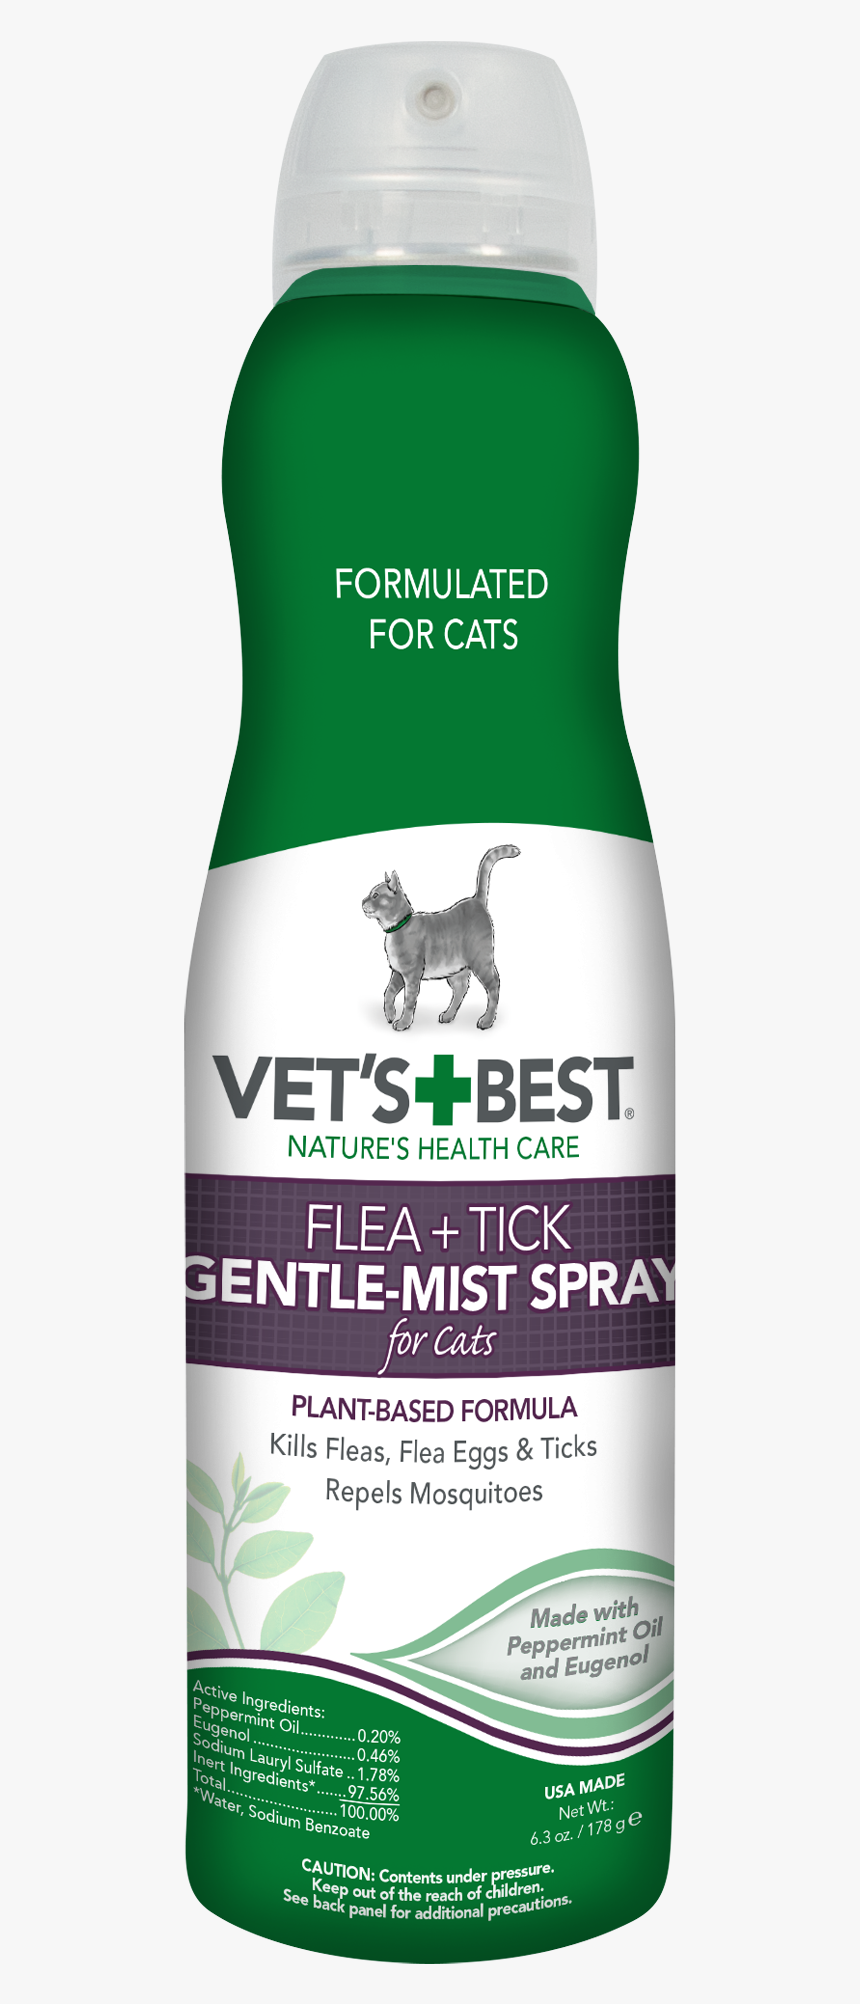 Vet"s Best Flea And Tick Gentle-mist Spray For Cats, - Vet's Best Flea And Tick Spray For Cats, HD Png Download, Free Download